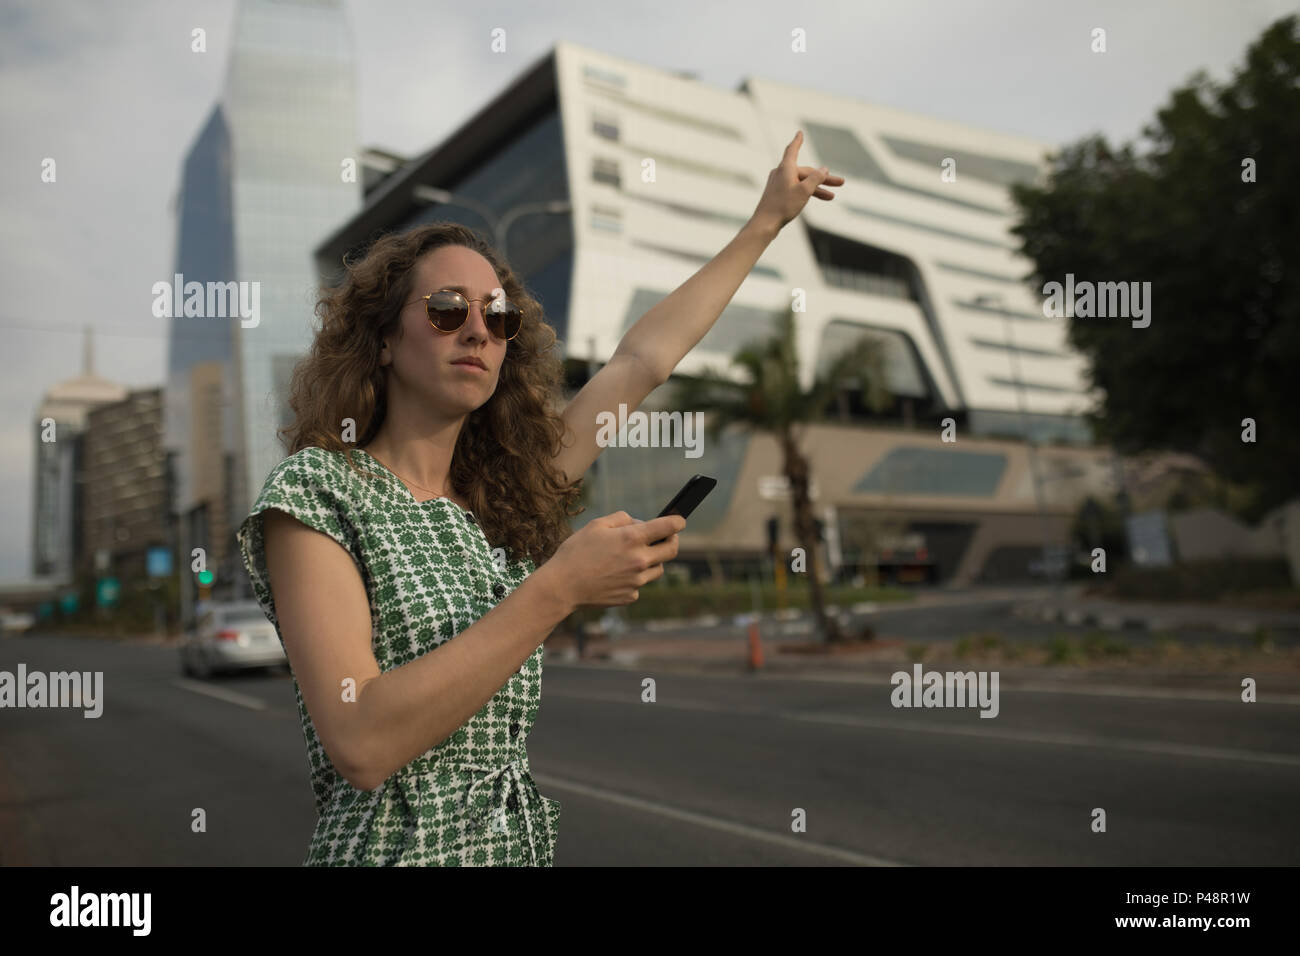 Woman hailing pour rouler avec un téléphone mobile dans la main Banque D'Images